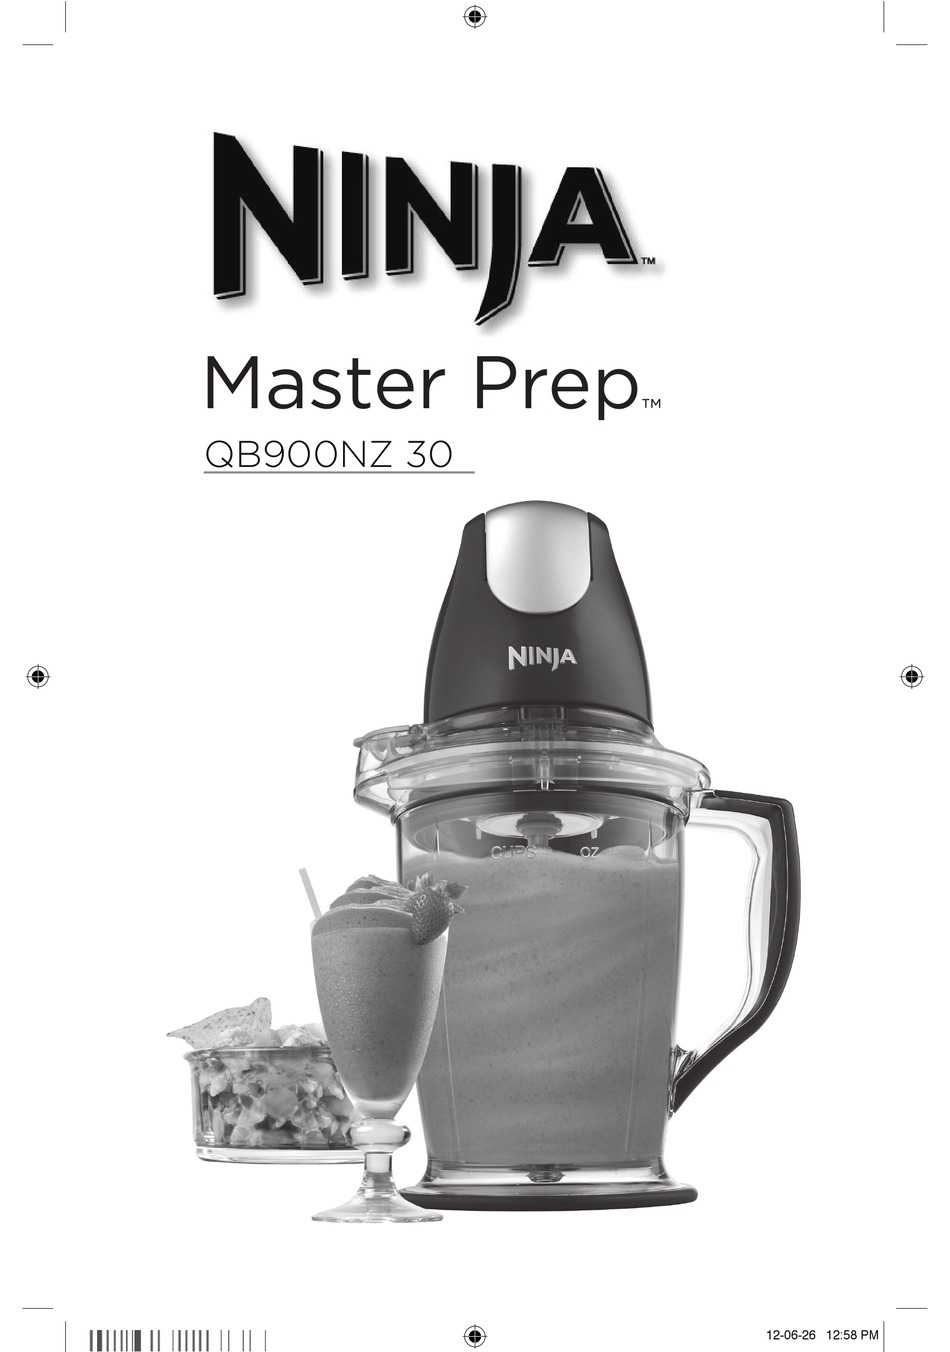 Ninja Master Prep Qb900nz 30 